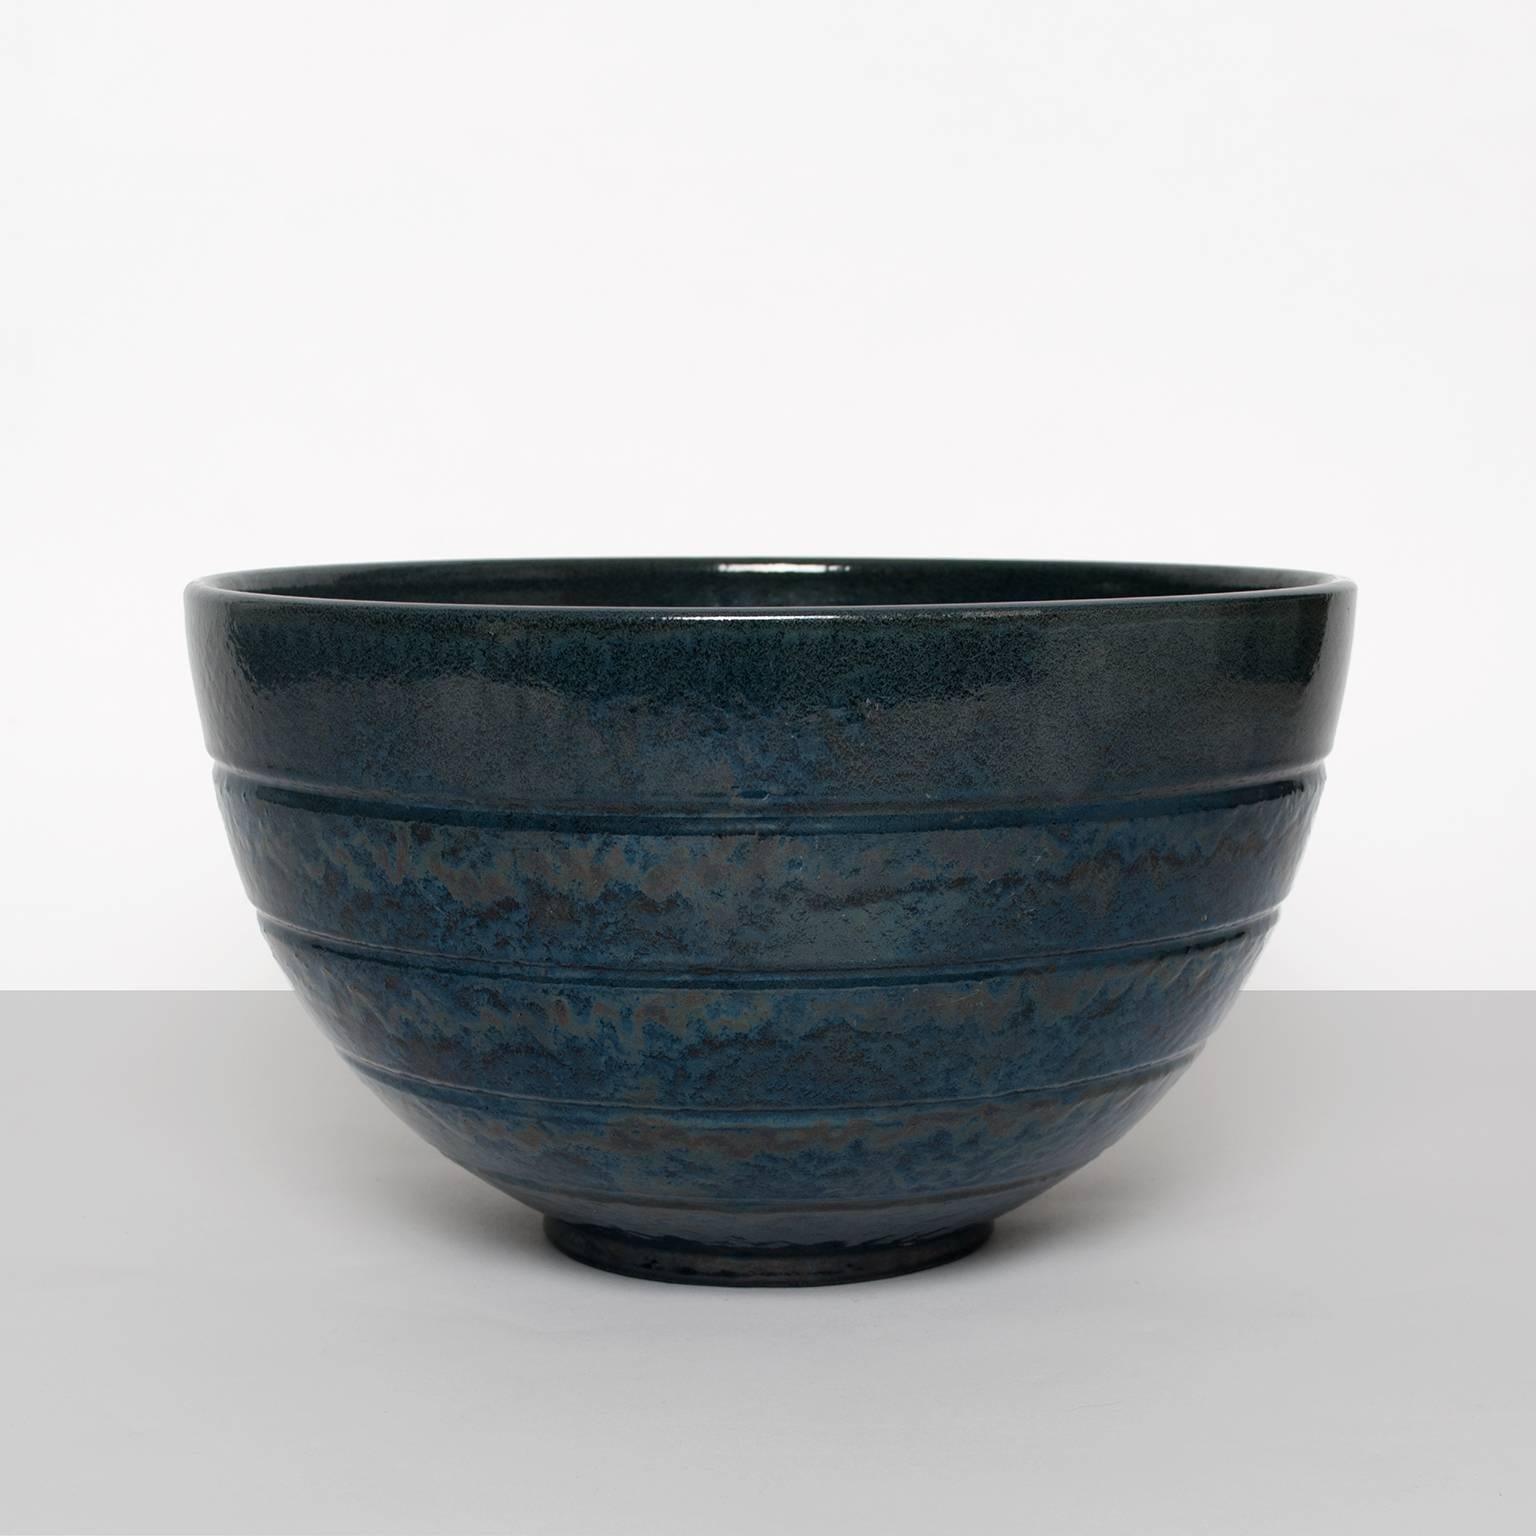 Large Scandinavian Modern ceramic bowl by Jerk Werkmäster for Nittsjo in midnight blue glaze. Signed on bottom made between 1937-42.
Diameter: 12", Height: 7".